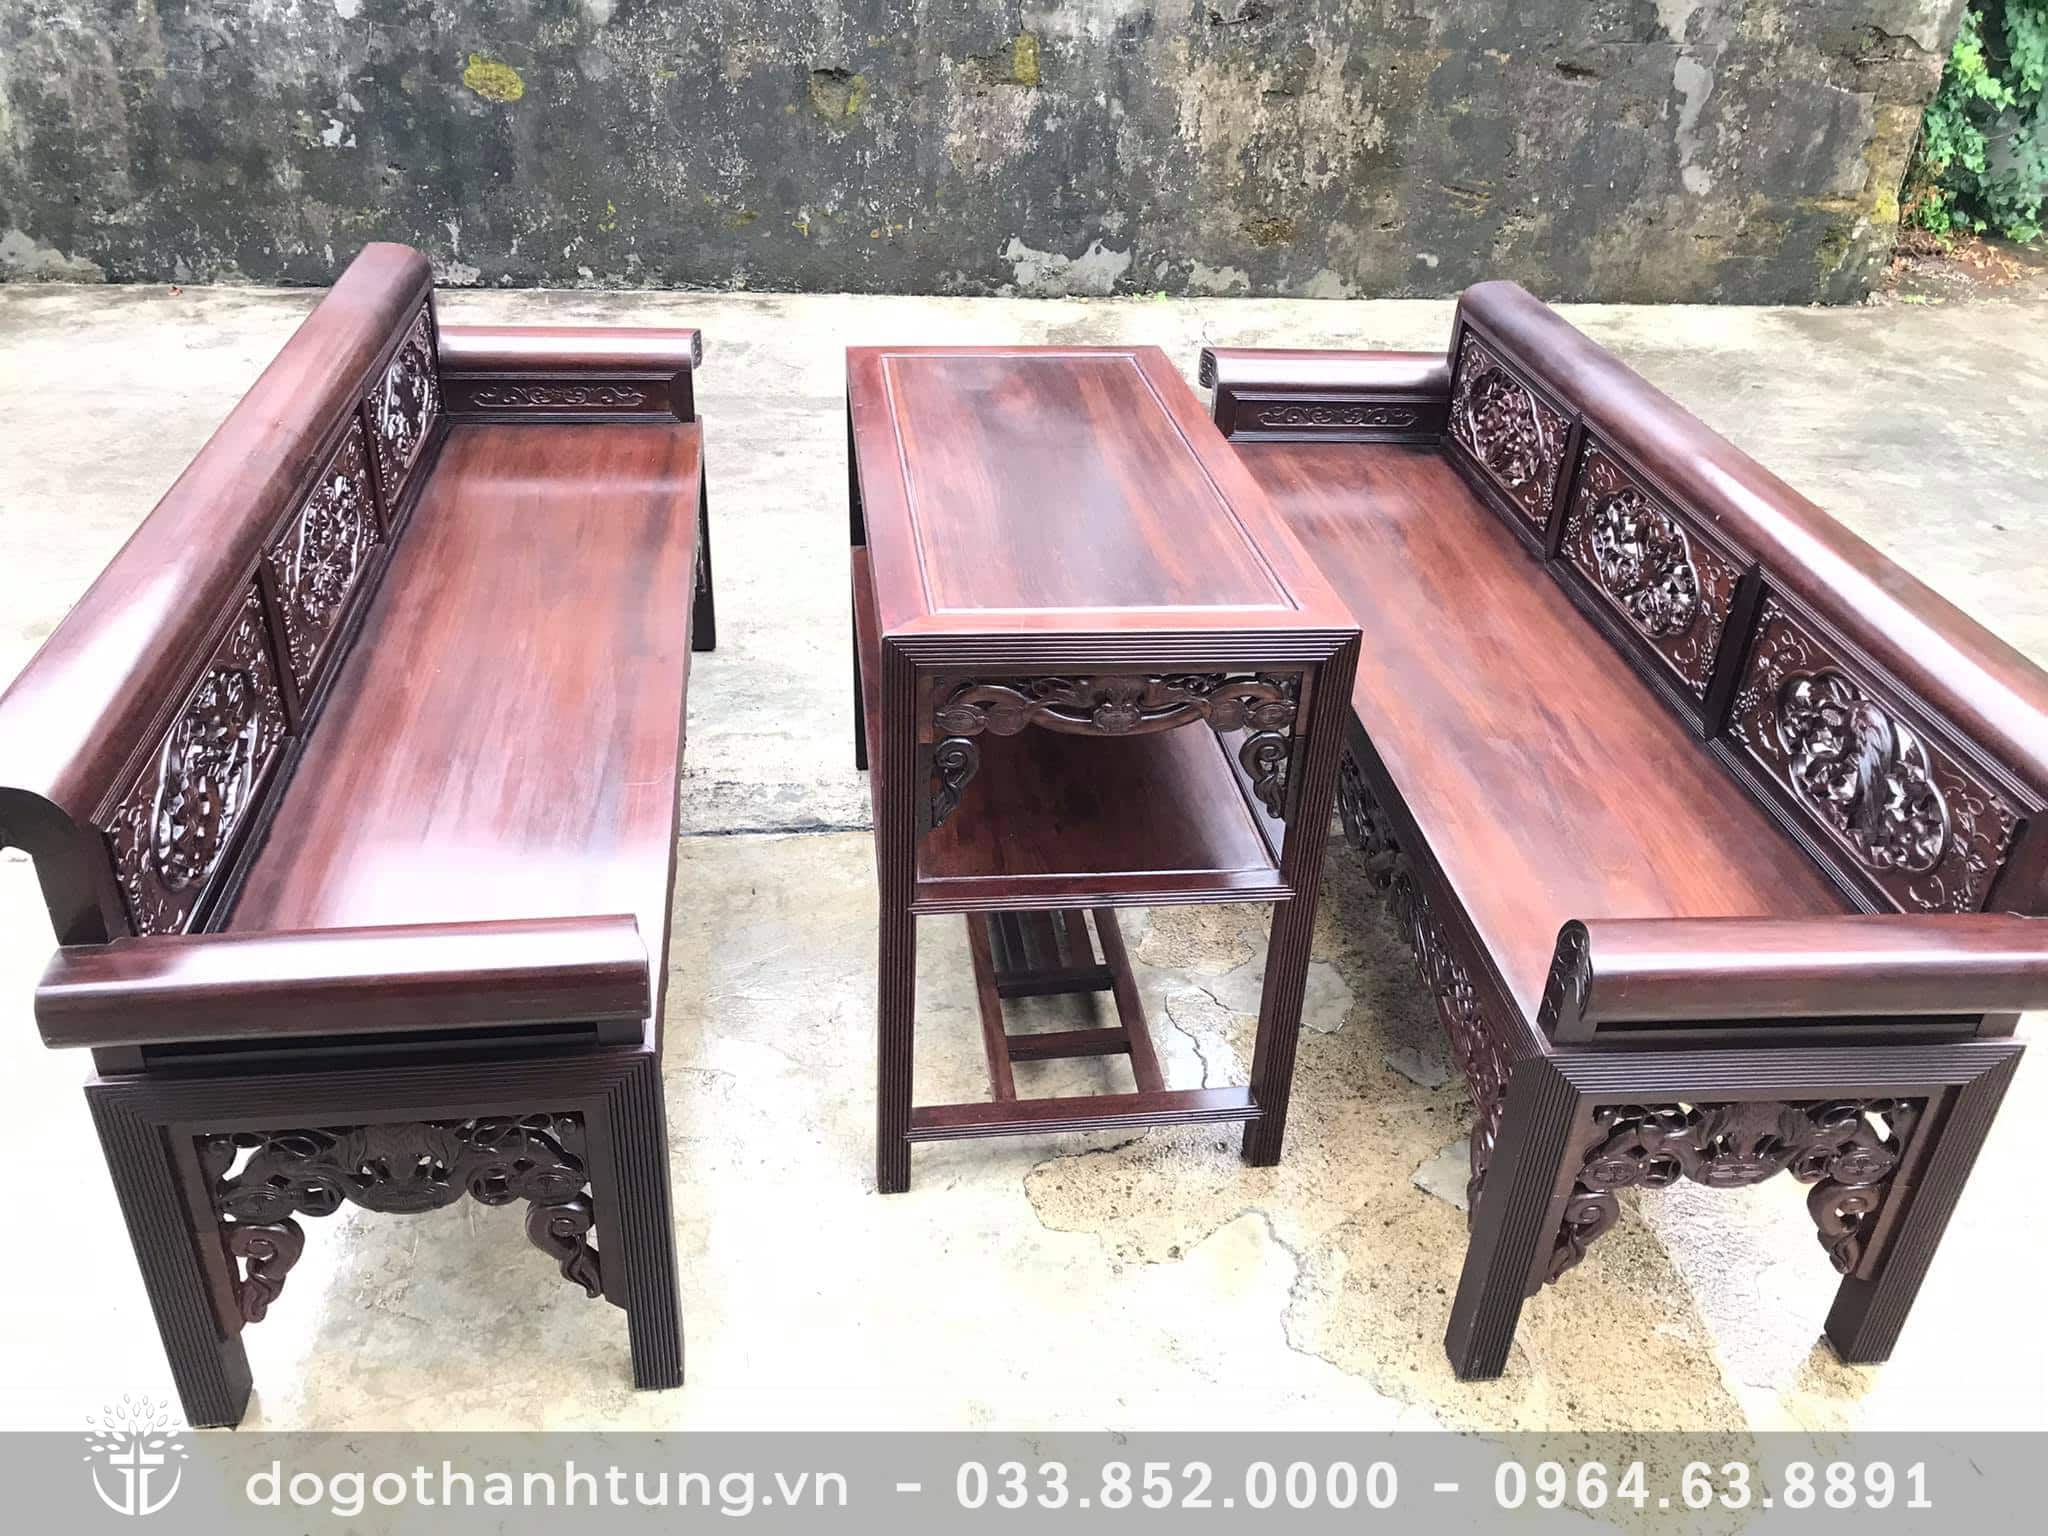 Địa chỉ thanh lý đồ cũ, mua bán bàn ghế cũ tại Nam Định